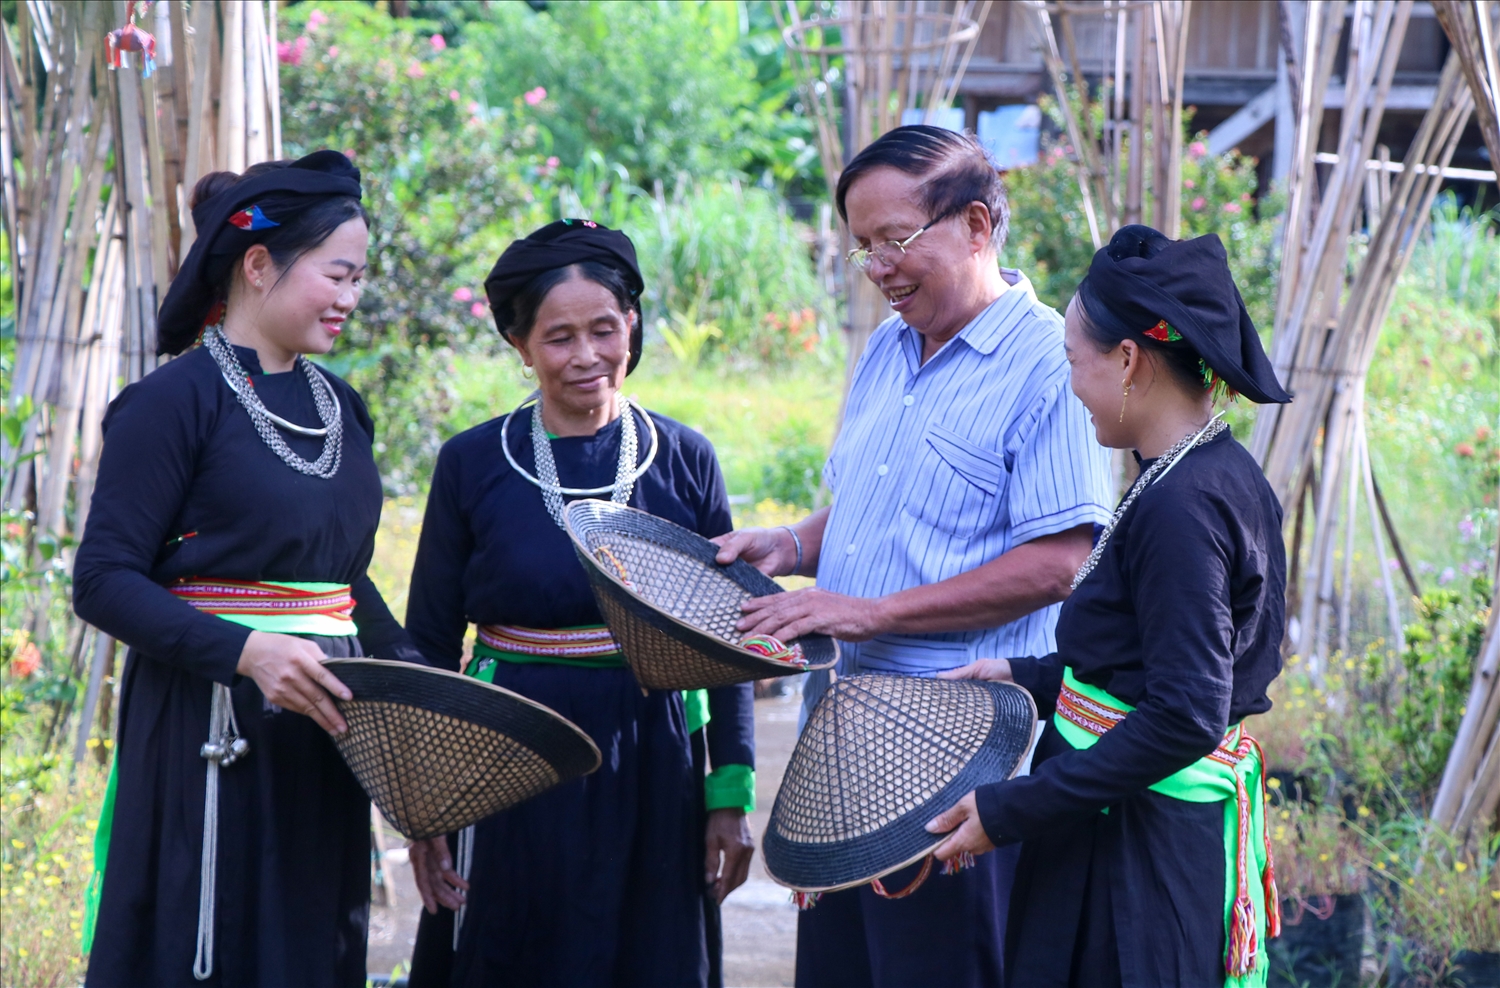 Bên cạnh đó, chiếc nón lá cũng được khách du lịch trong và ngoài nước yêu thích, đó là một món quà đặc biệt khi ghé thăm Làng văn hoá du lịch cộng đồng dân tộc Tày.